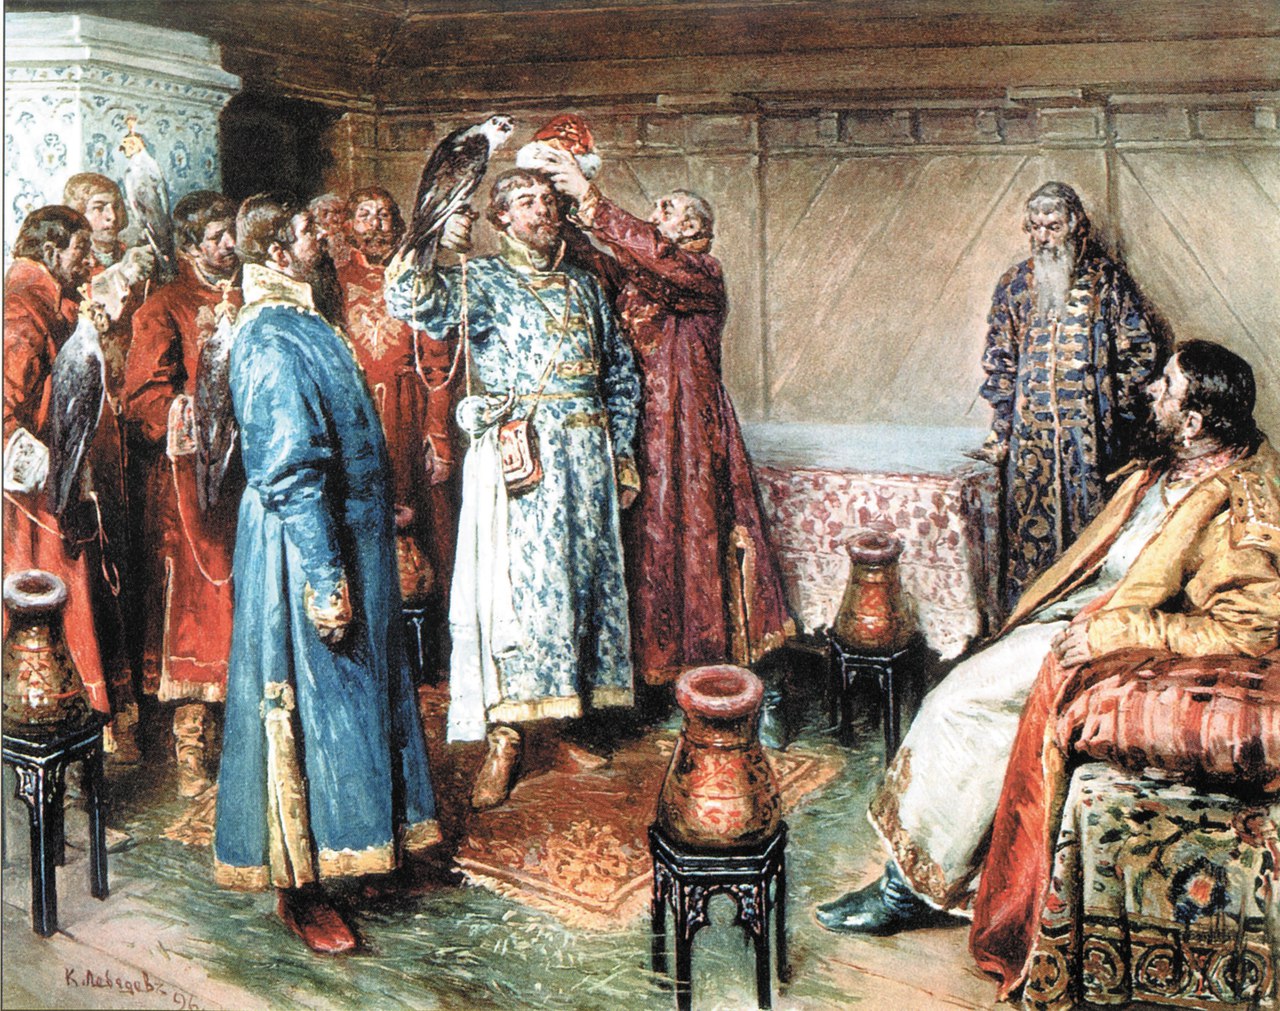 Княжеские слуги в древней руси